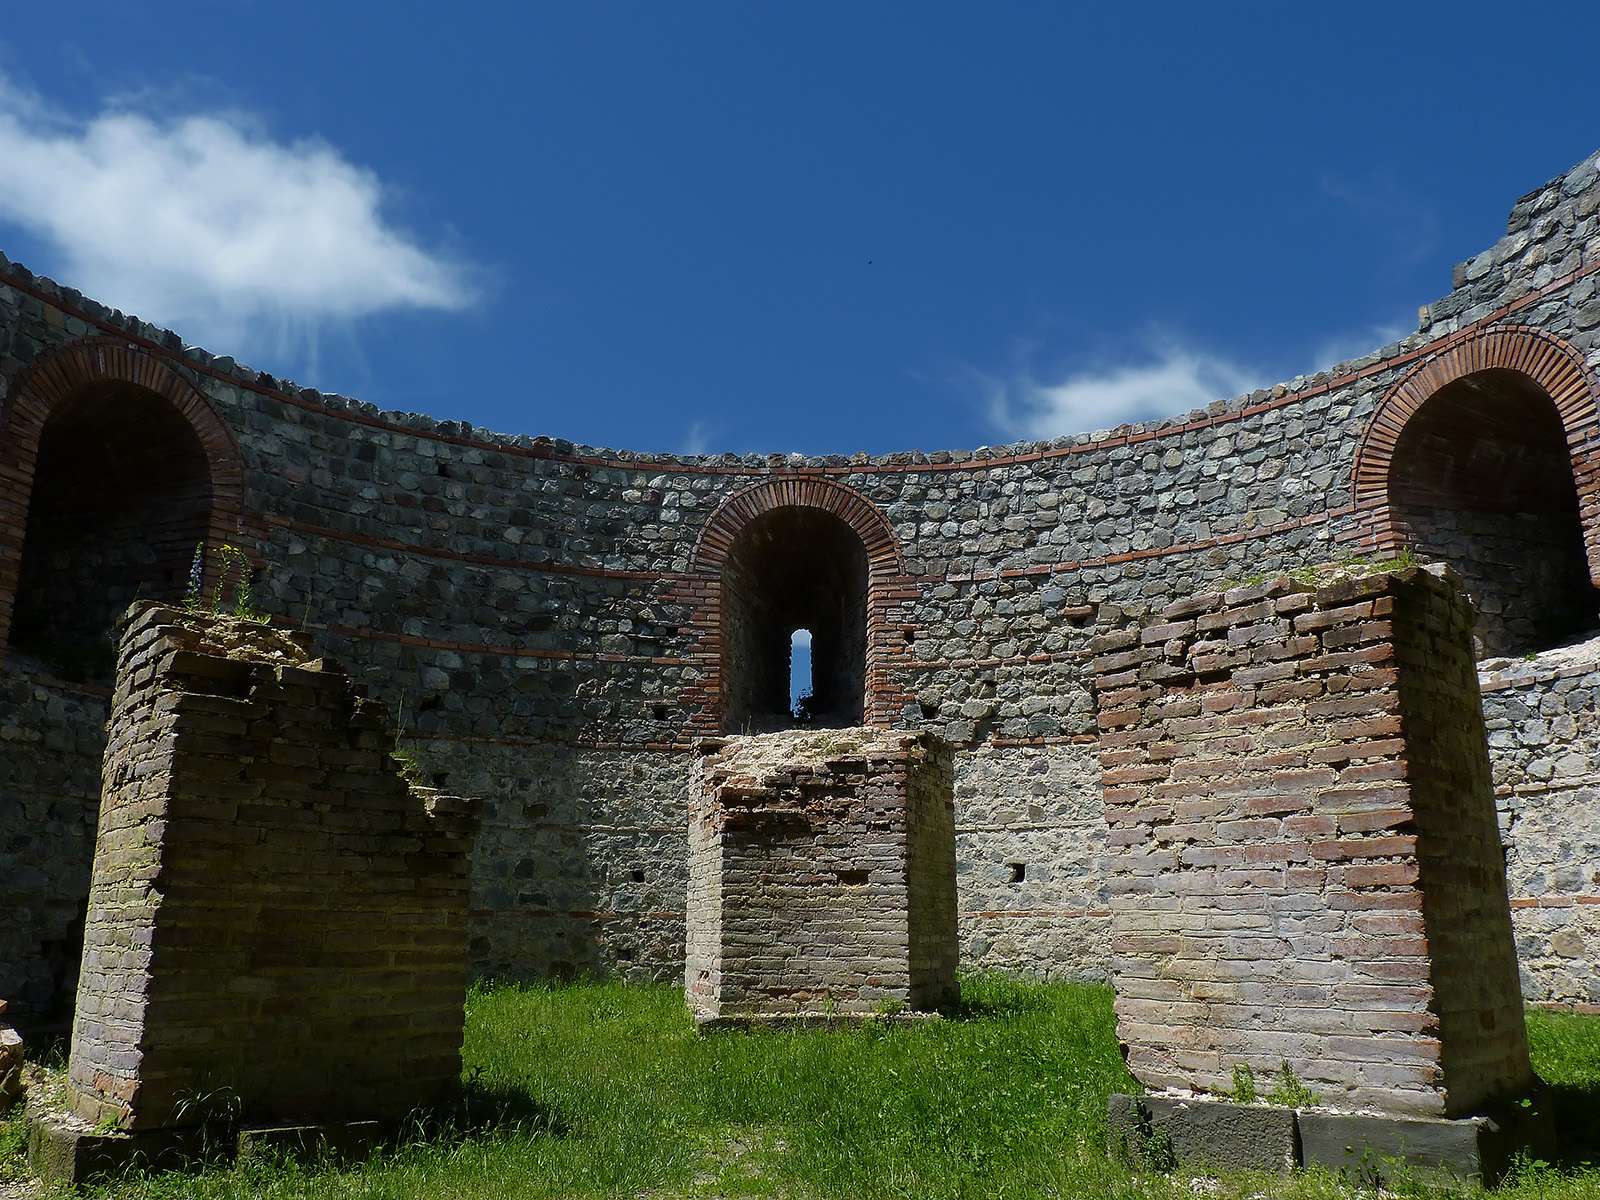 賈姆濟格勒－羅慕利亞納的加萊裡烏斯宮 Gamzigrad-Romuliana Palace of Galerius